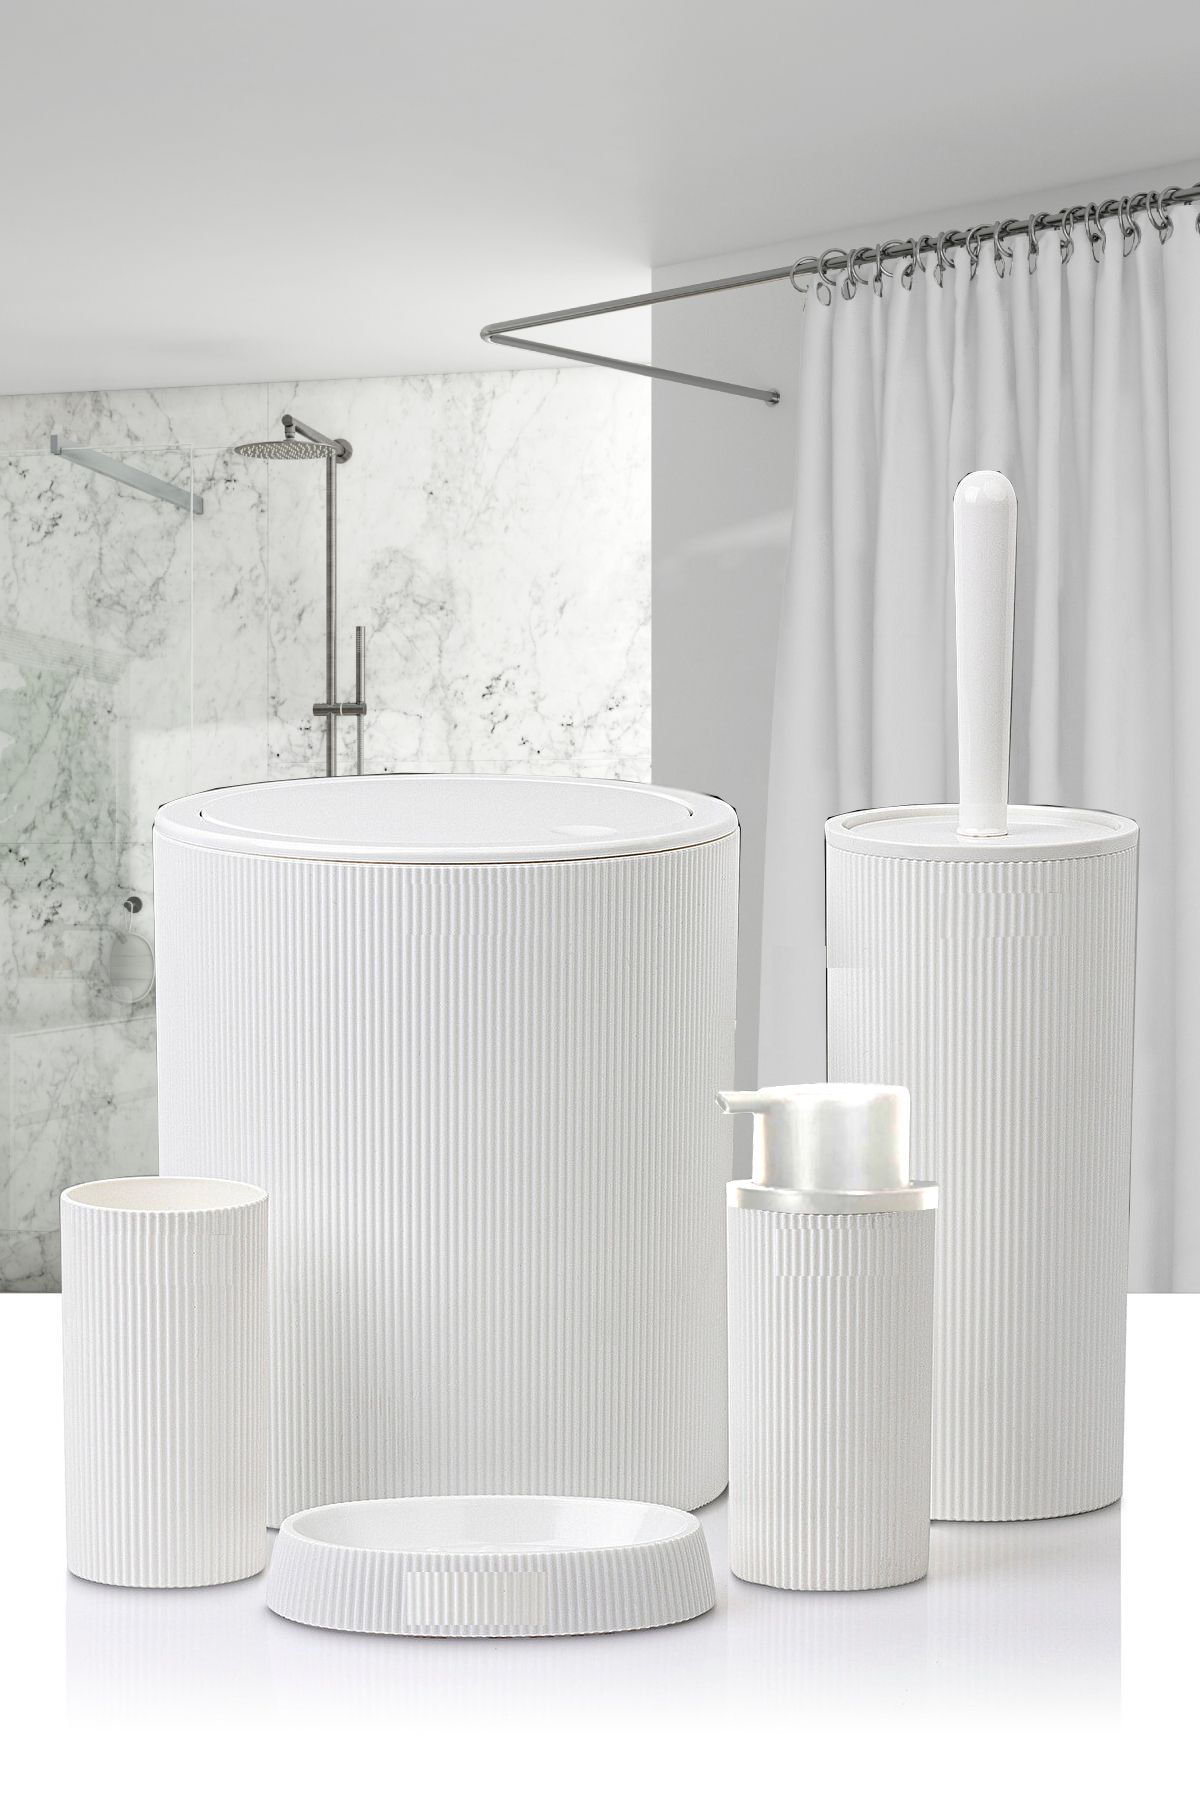 Tugomer 5 Parça Lüx Banyo Seti - Dekoratif Yuvarlak Pratik Kapak Çöp Kovası Diş Fırçalık Sabunluk Fırça Seti